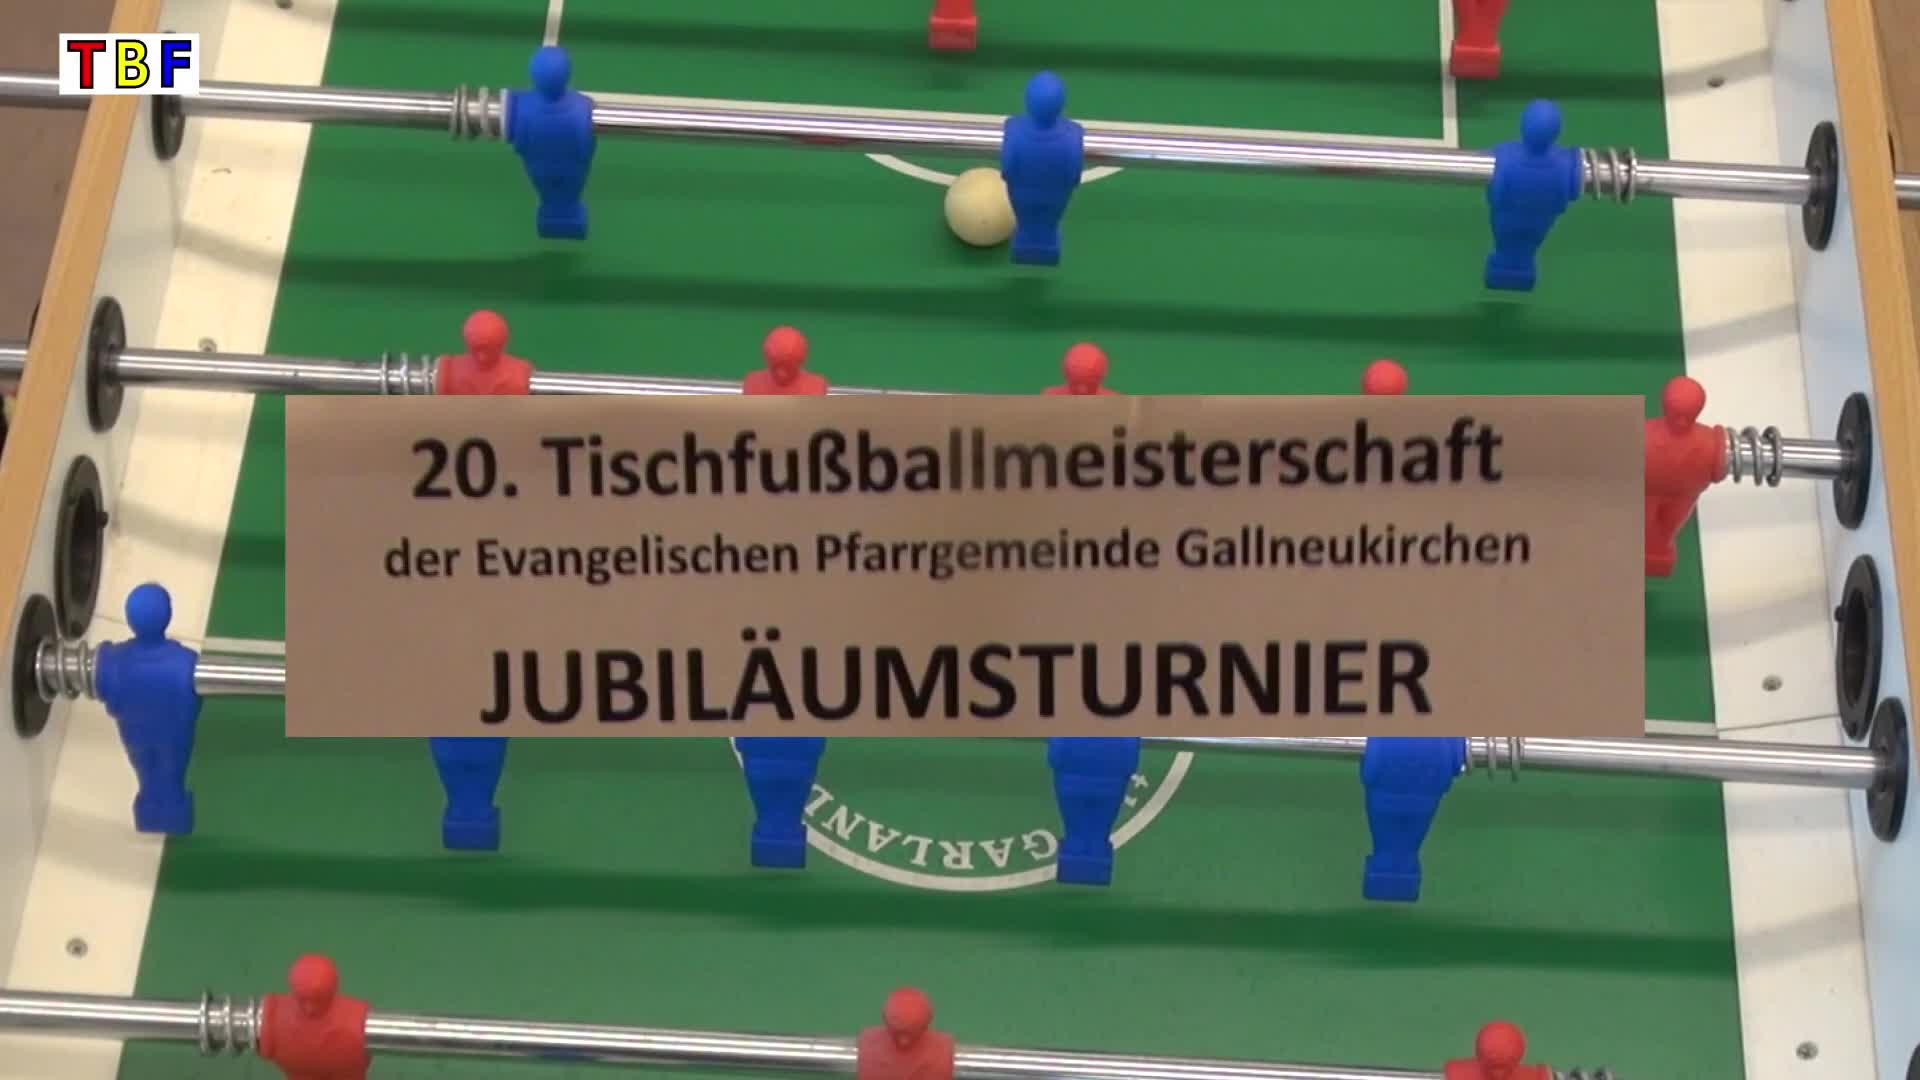 Tischfussballmeisterschaft in Gallneukirchen